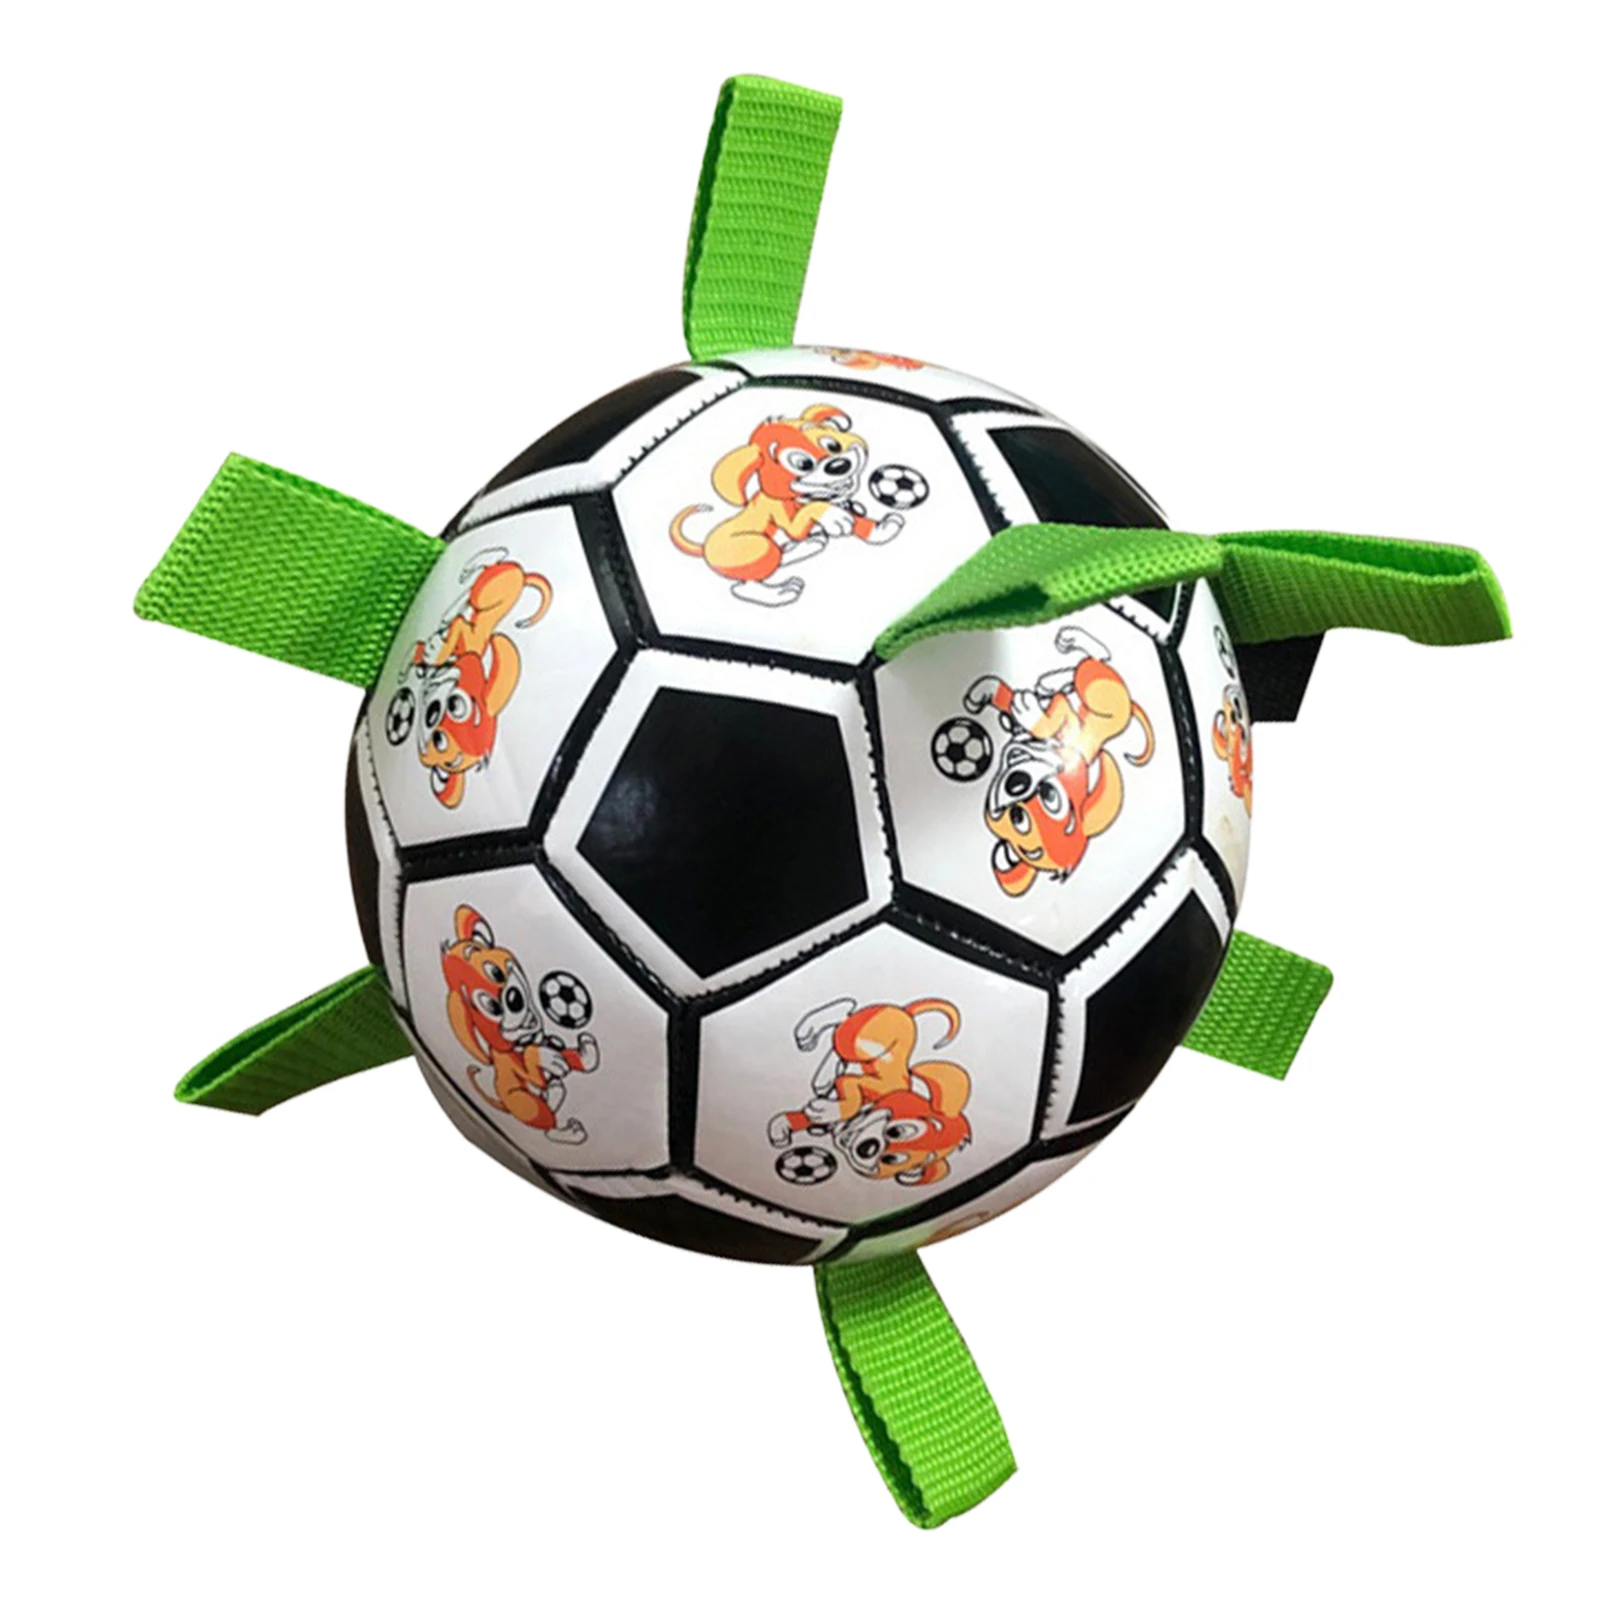 

Футбольный мяч для собак с ремешками, интерактивные собачьи мячи для дома и улицы, интерактивные собачьи игрушки, шары для собак, забавная собачья палочка, игрушка с легкой захватом